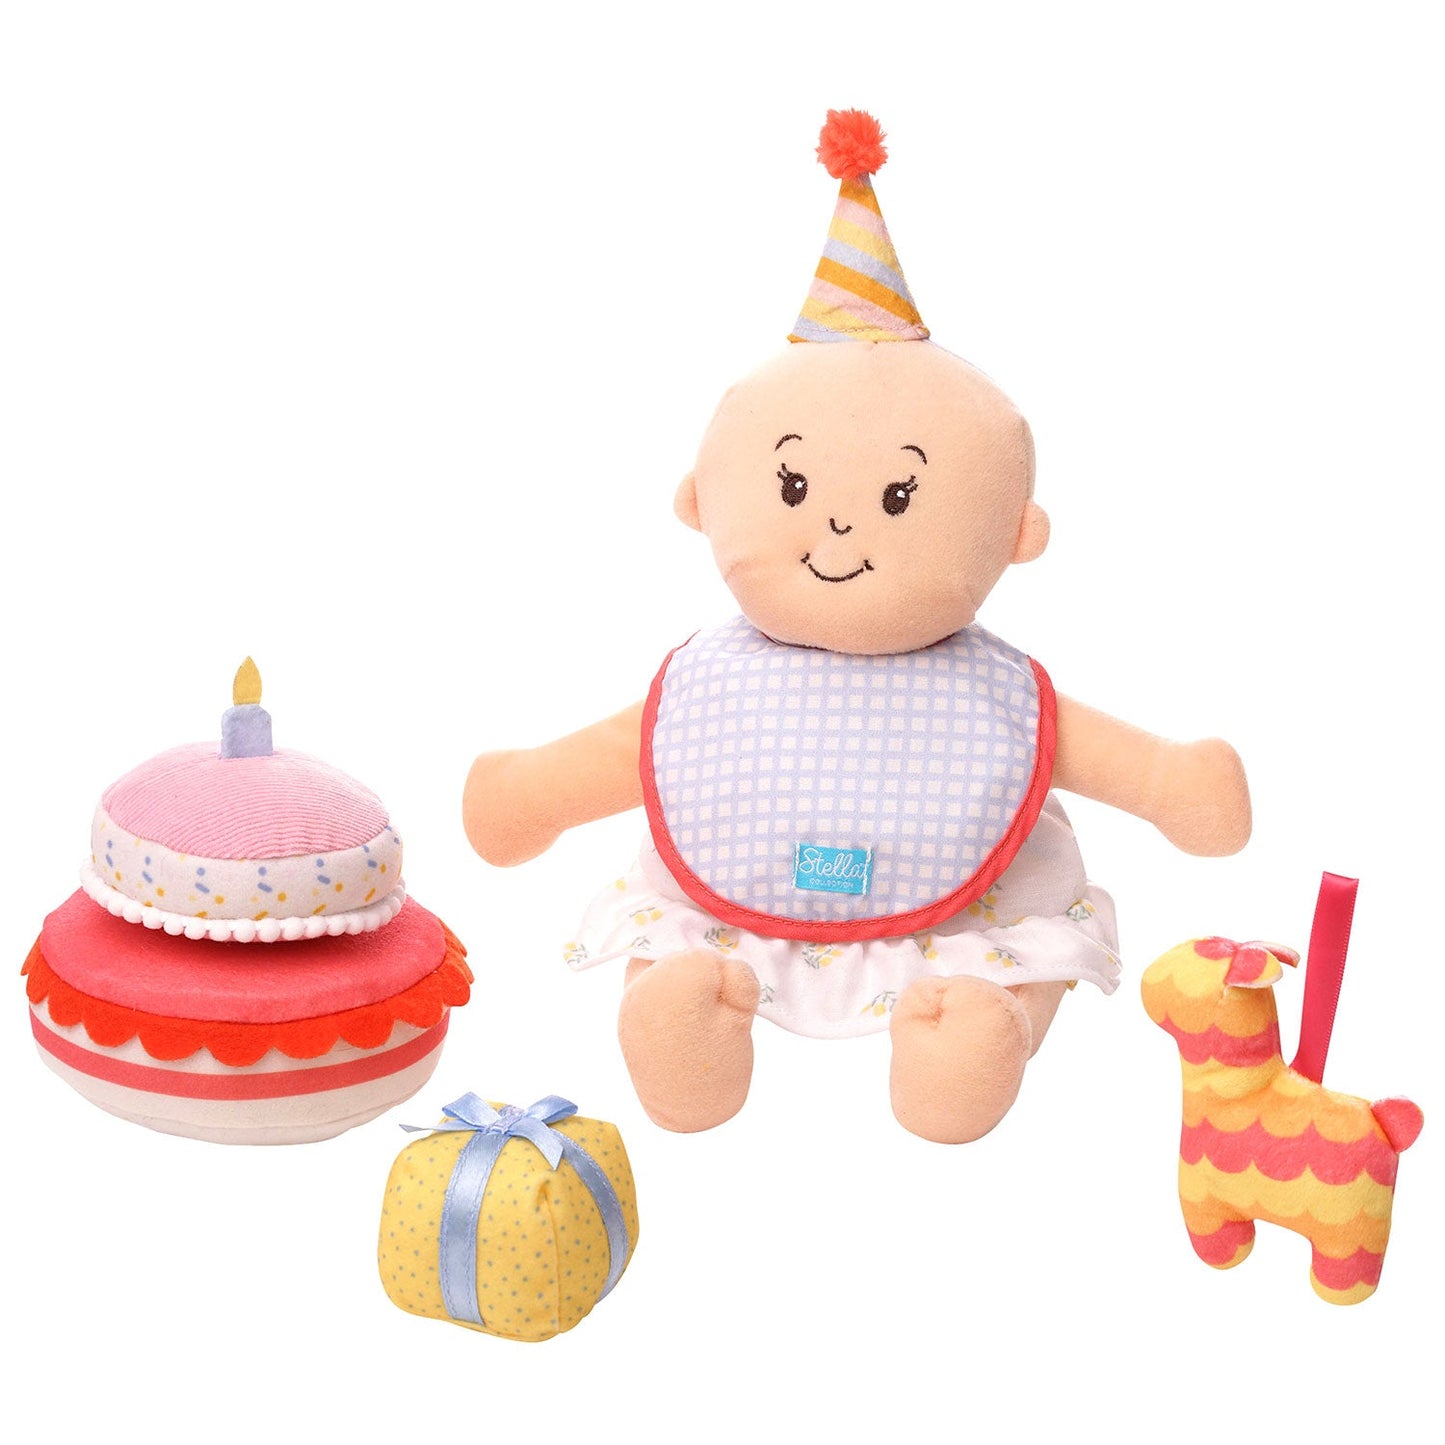 Manhattan Toy Stella Collection Birthday Party Dolls